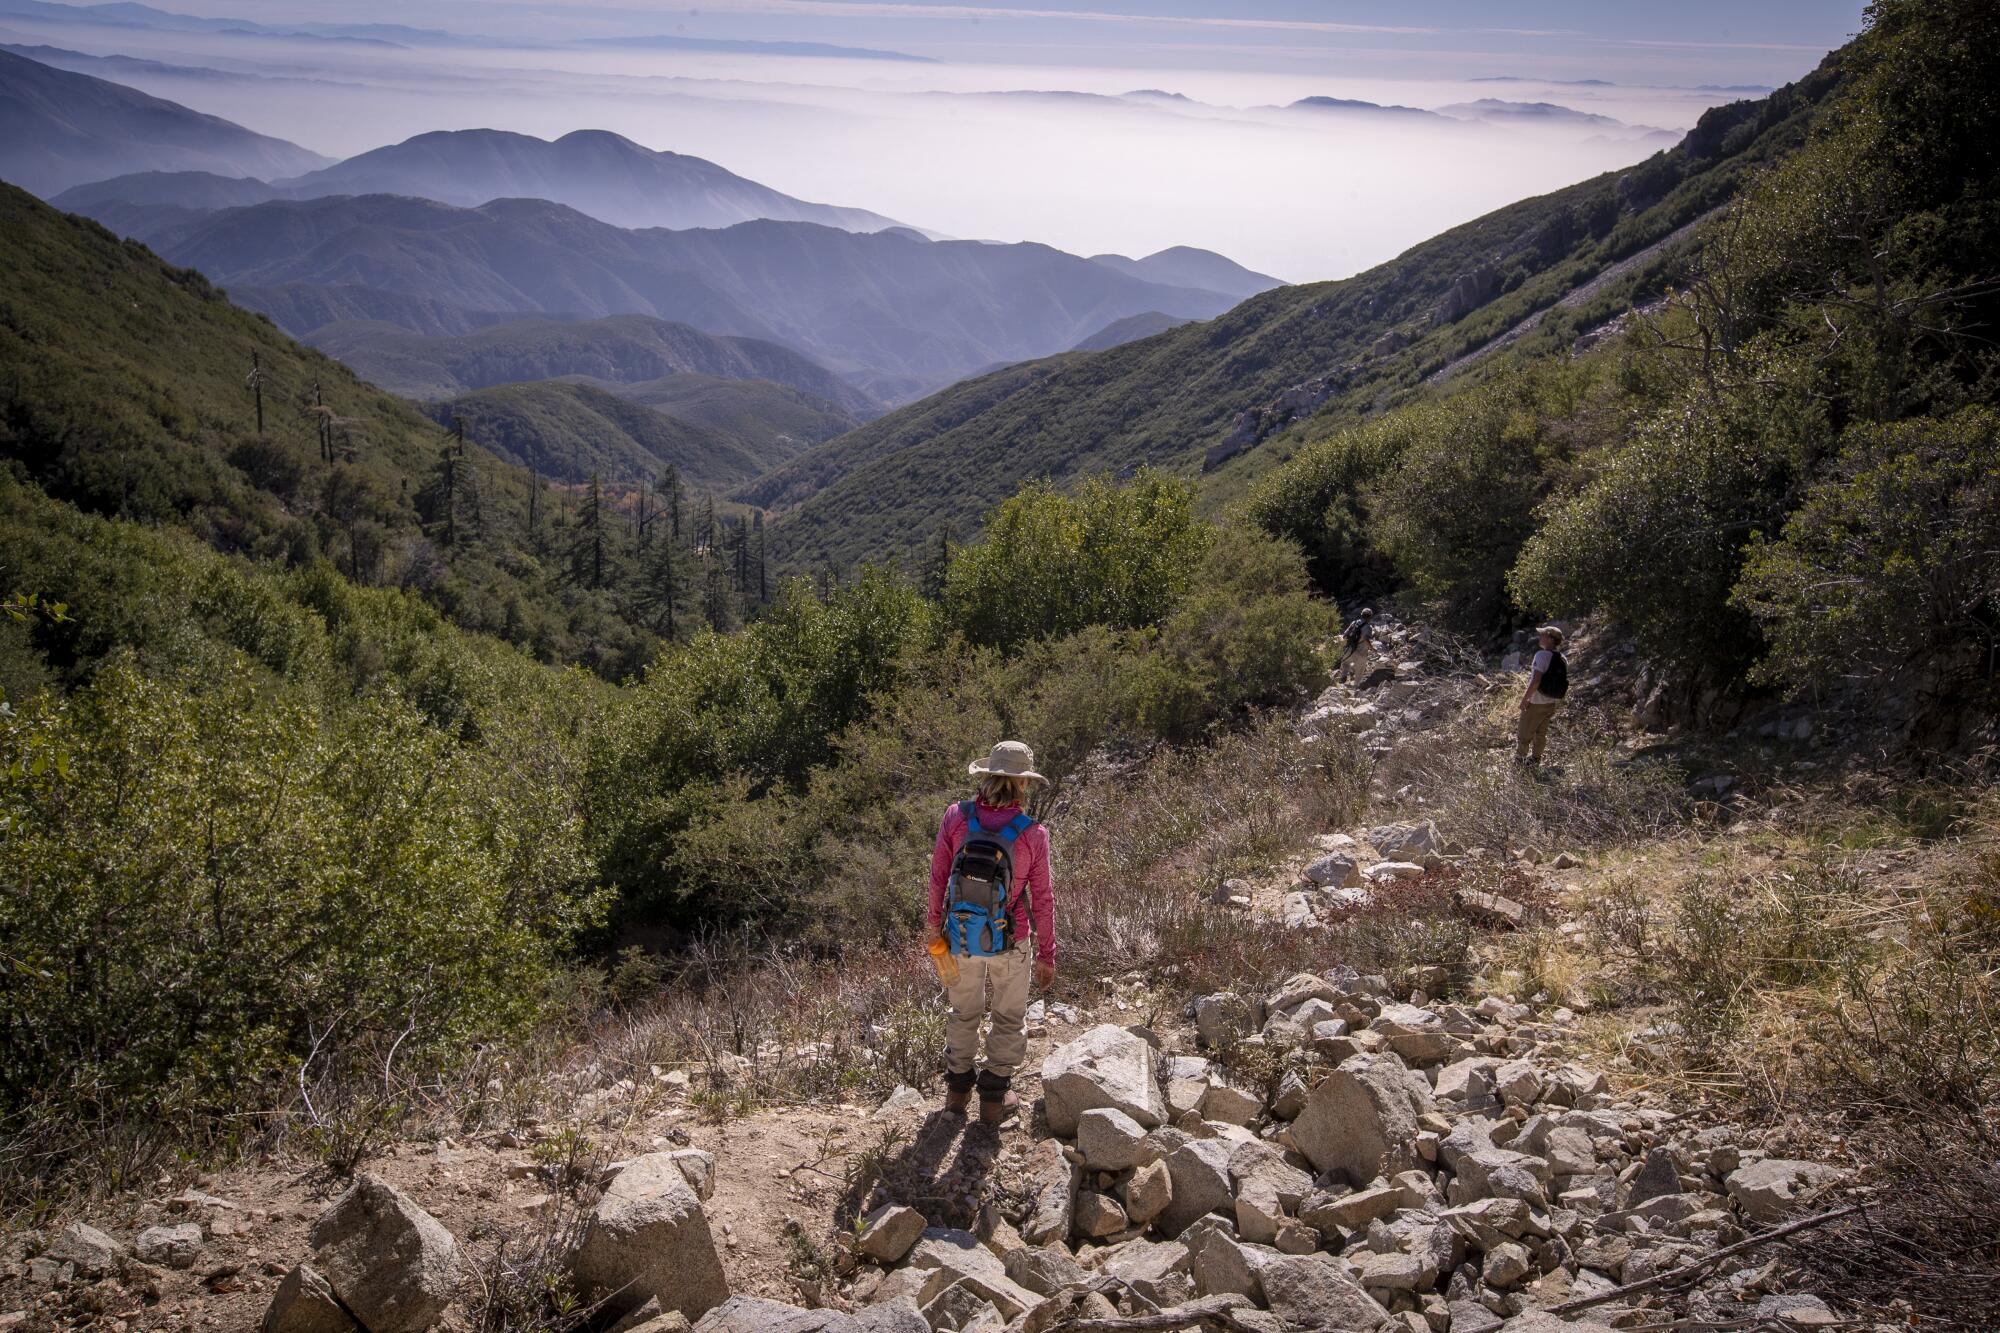 A hiker in San Bernardino National Forest.